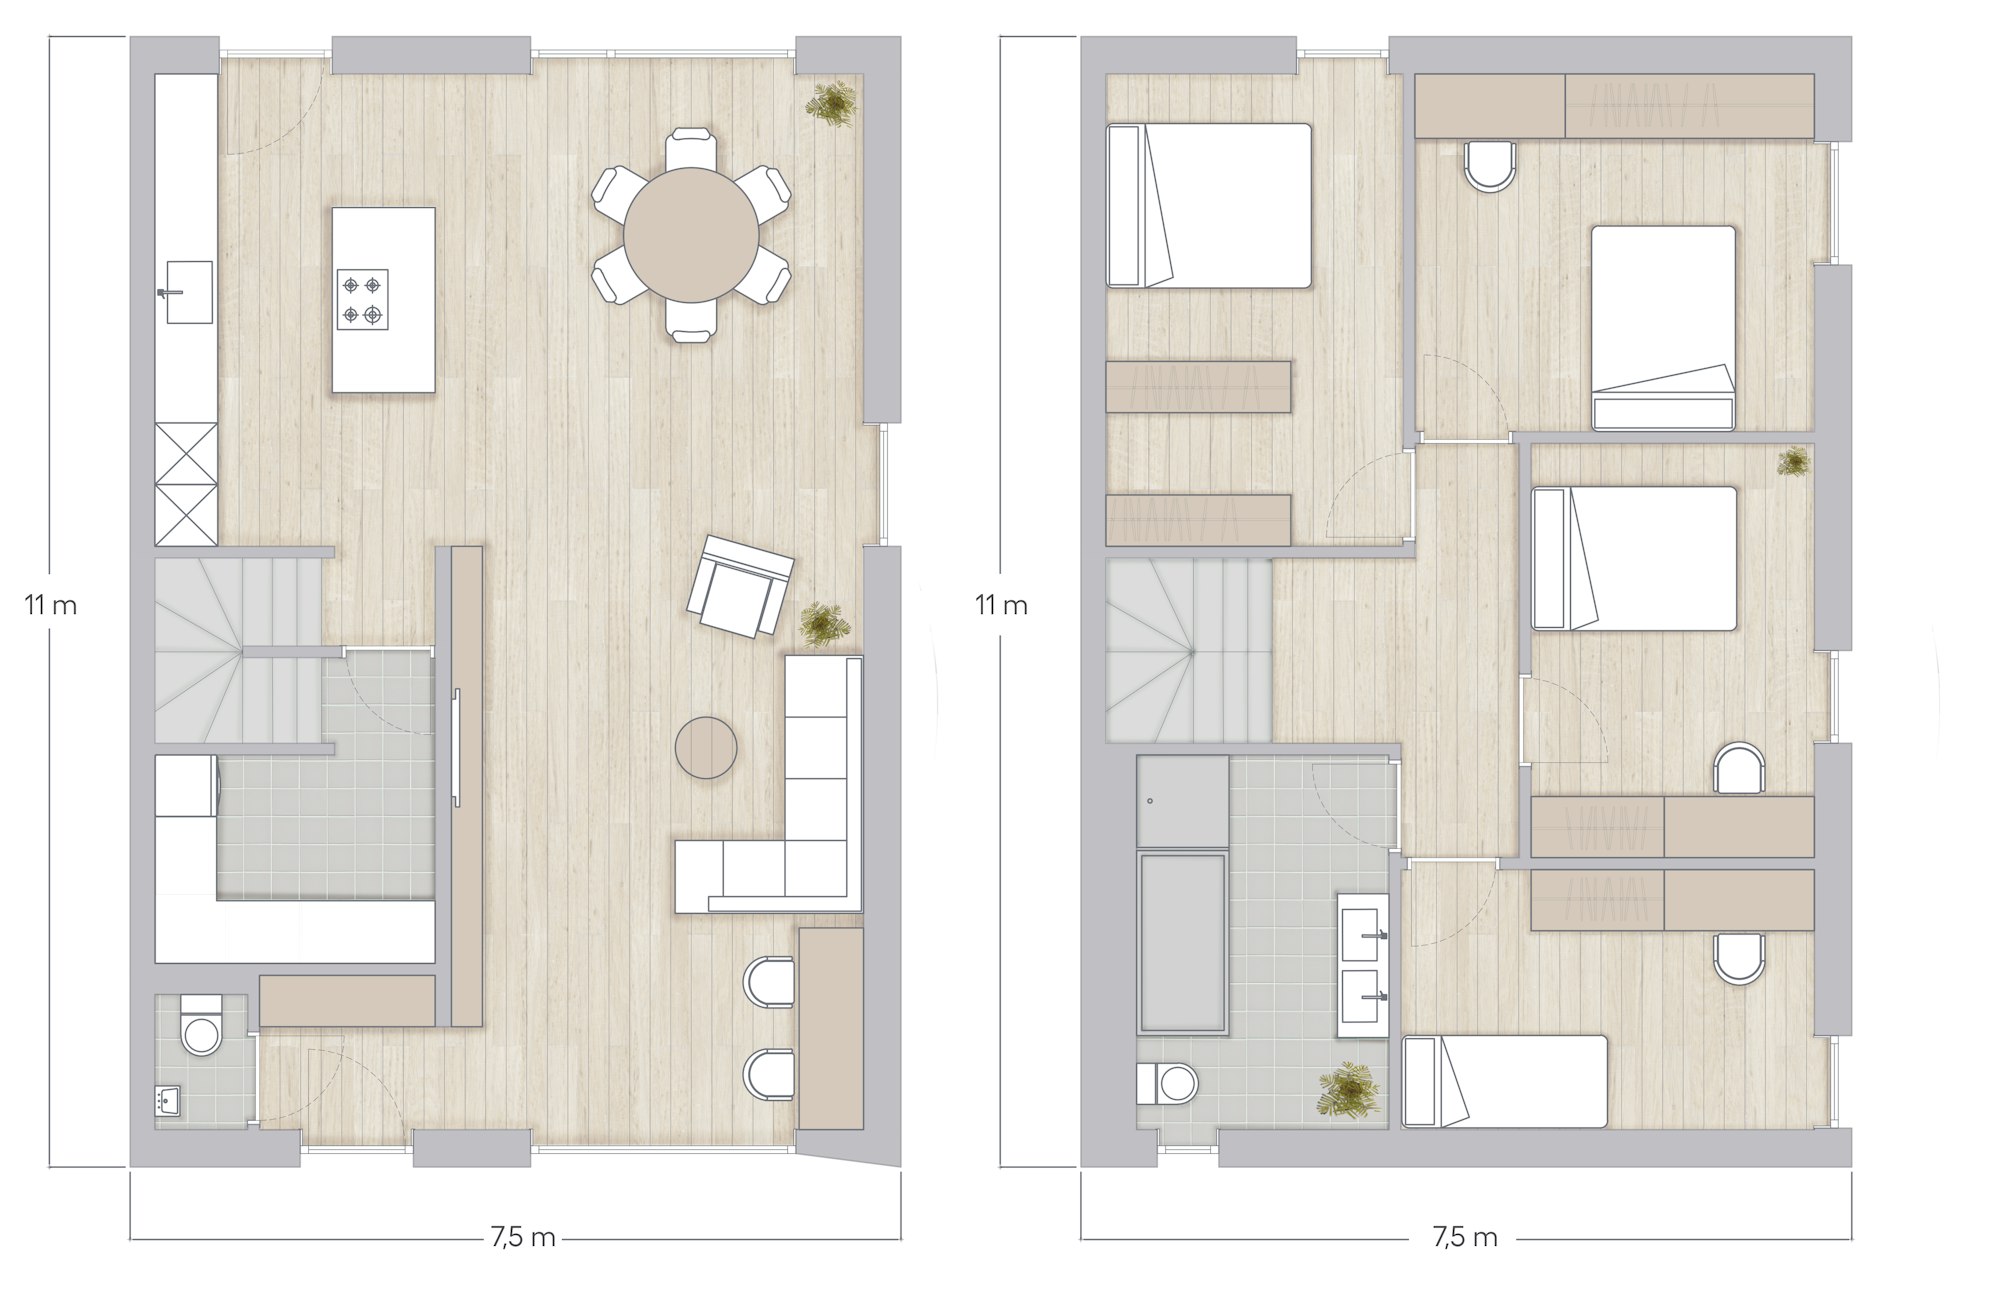 Plan Skilpod #165, woning met 4 slaapkamers over twee verdiepingen